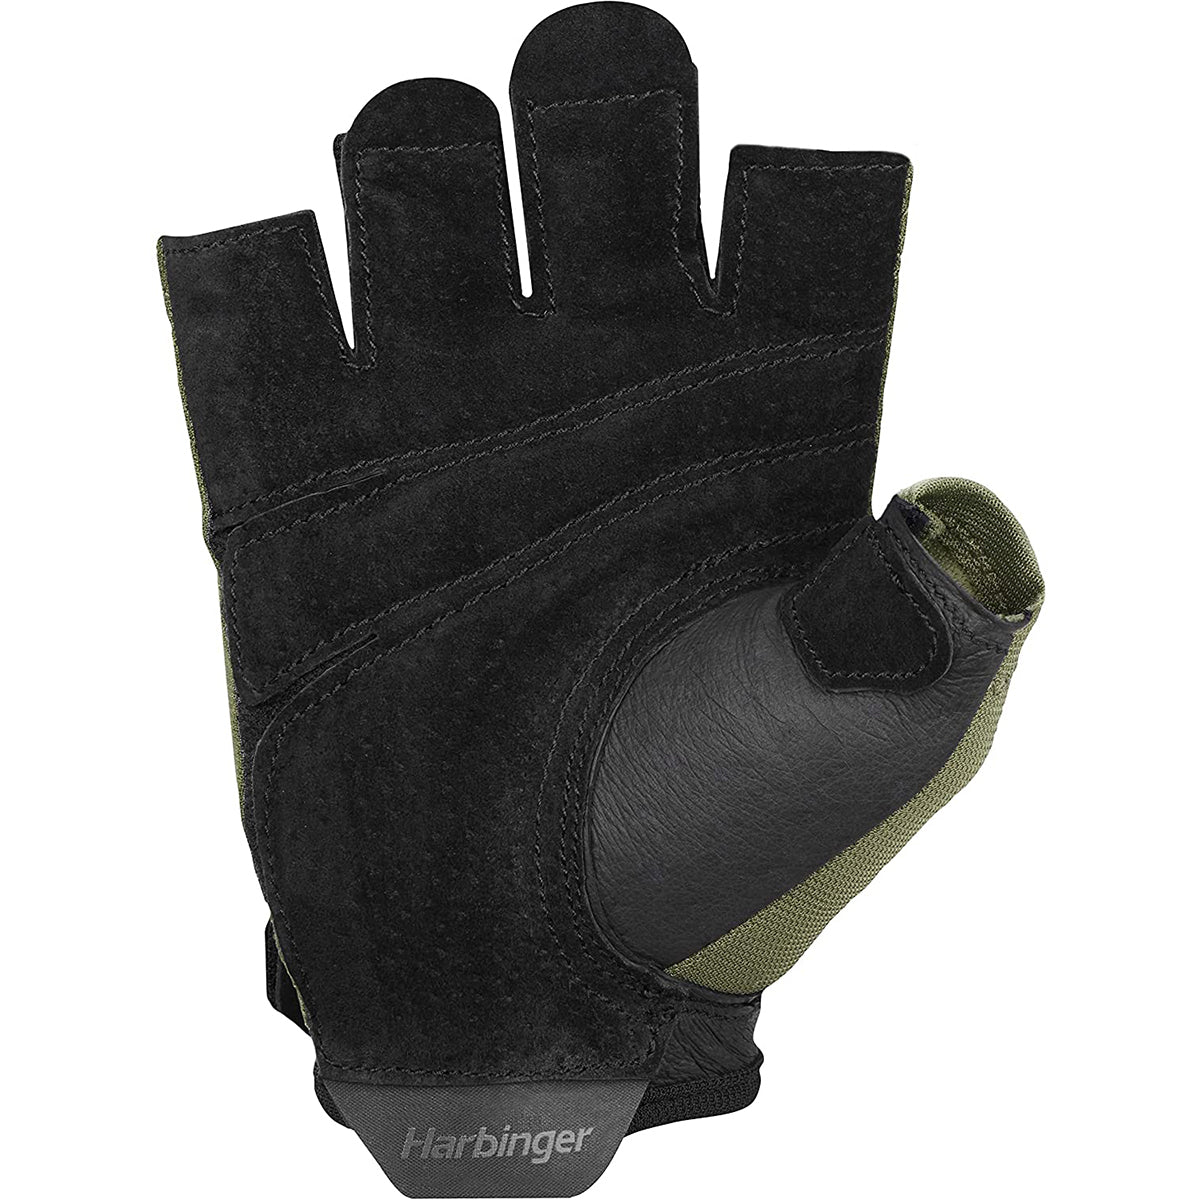 Harbinger Unisex Power Weight Lifting Gloves 2.0 - Black/Green Harbinger